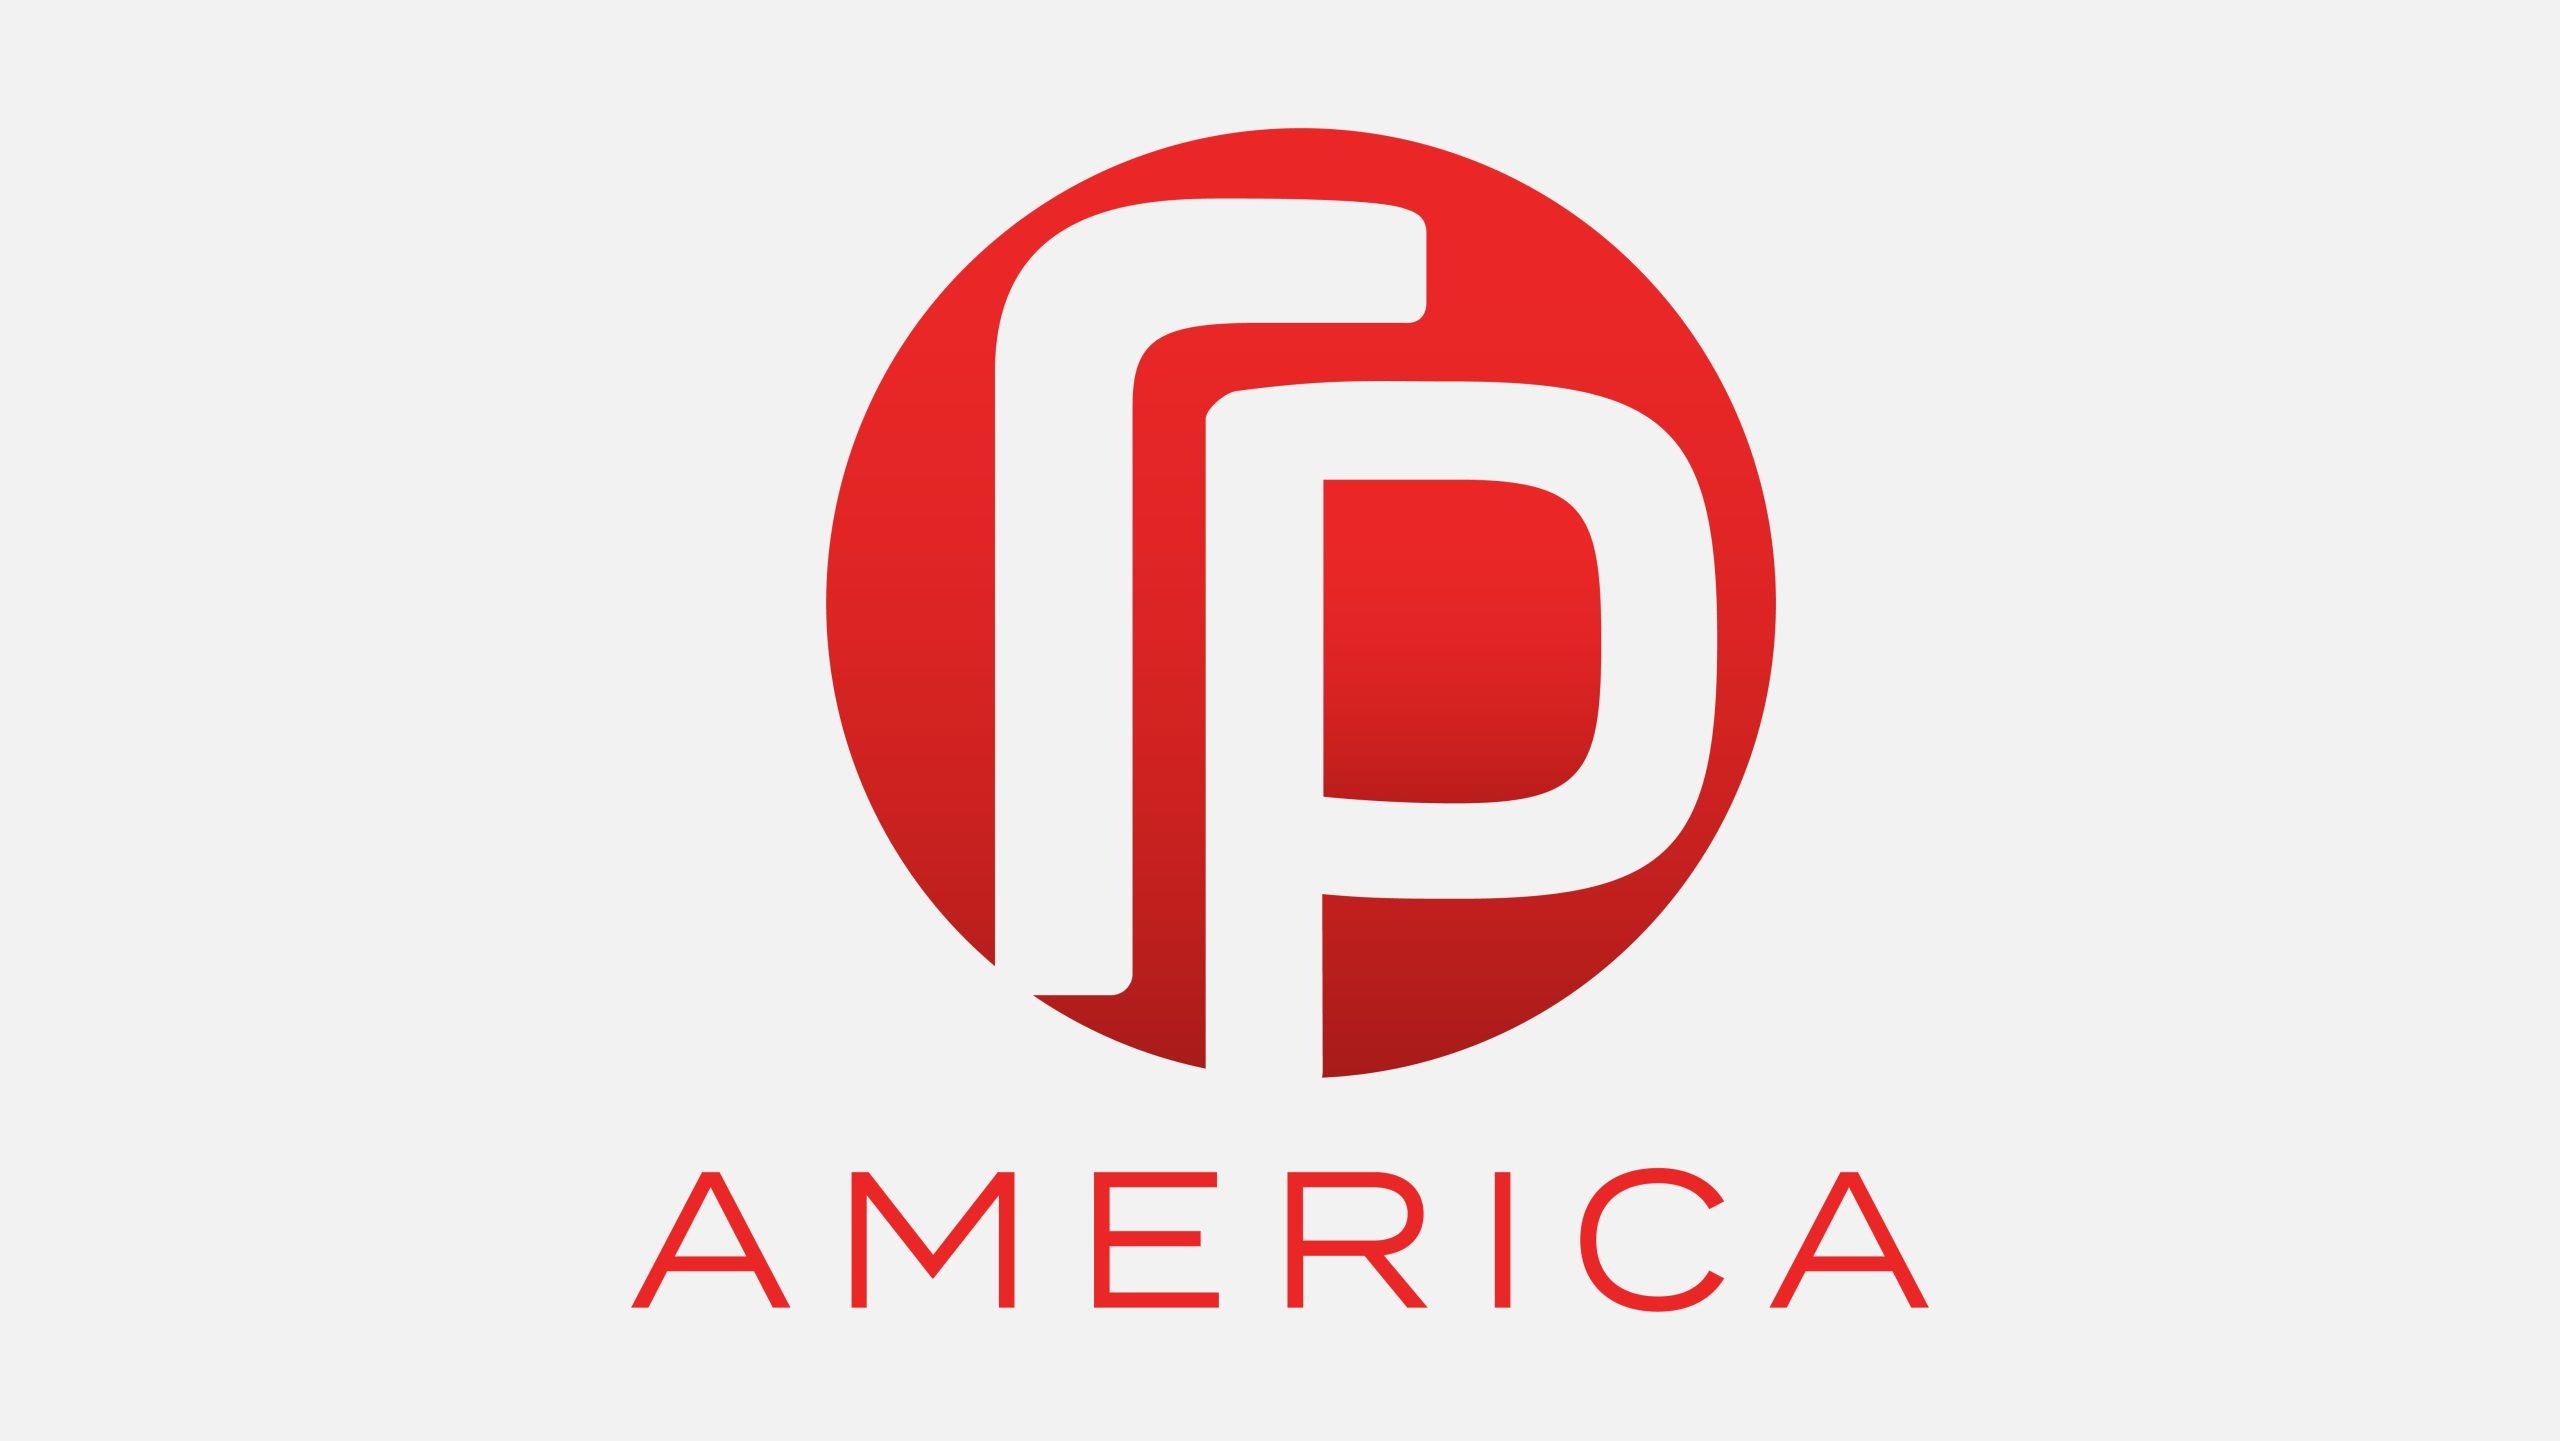 Logo Design: RP America